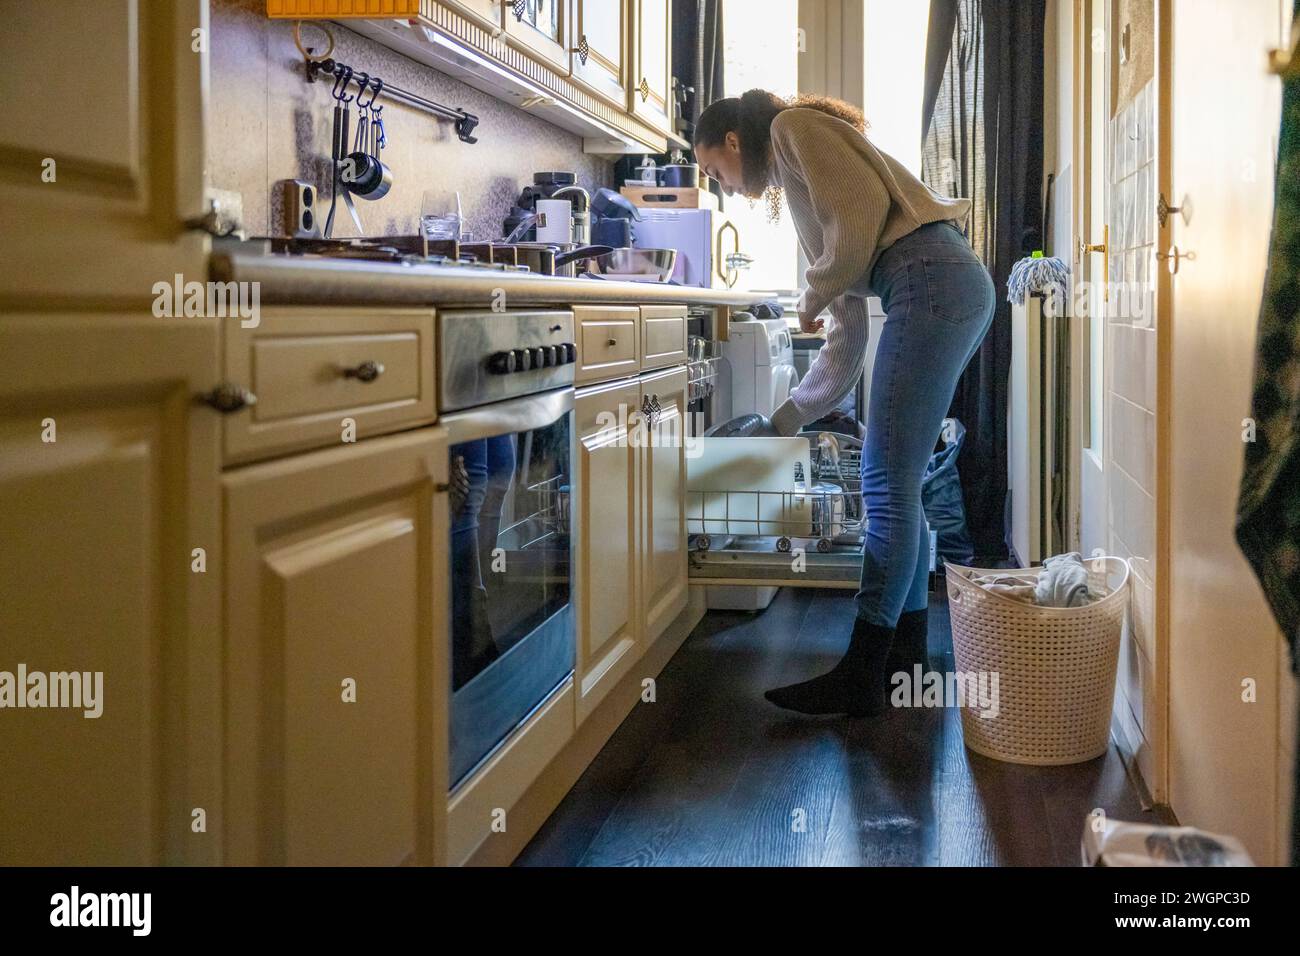 Belle femme nettoyant la cuisine et nourrissant le lave-vaisselle Banque D'Images